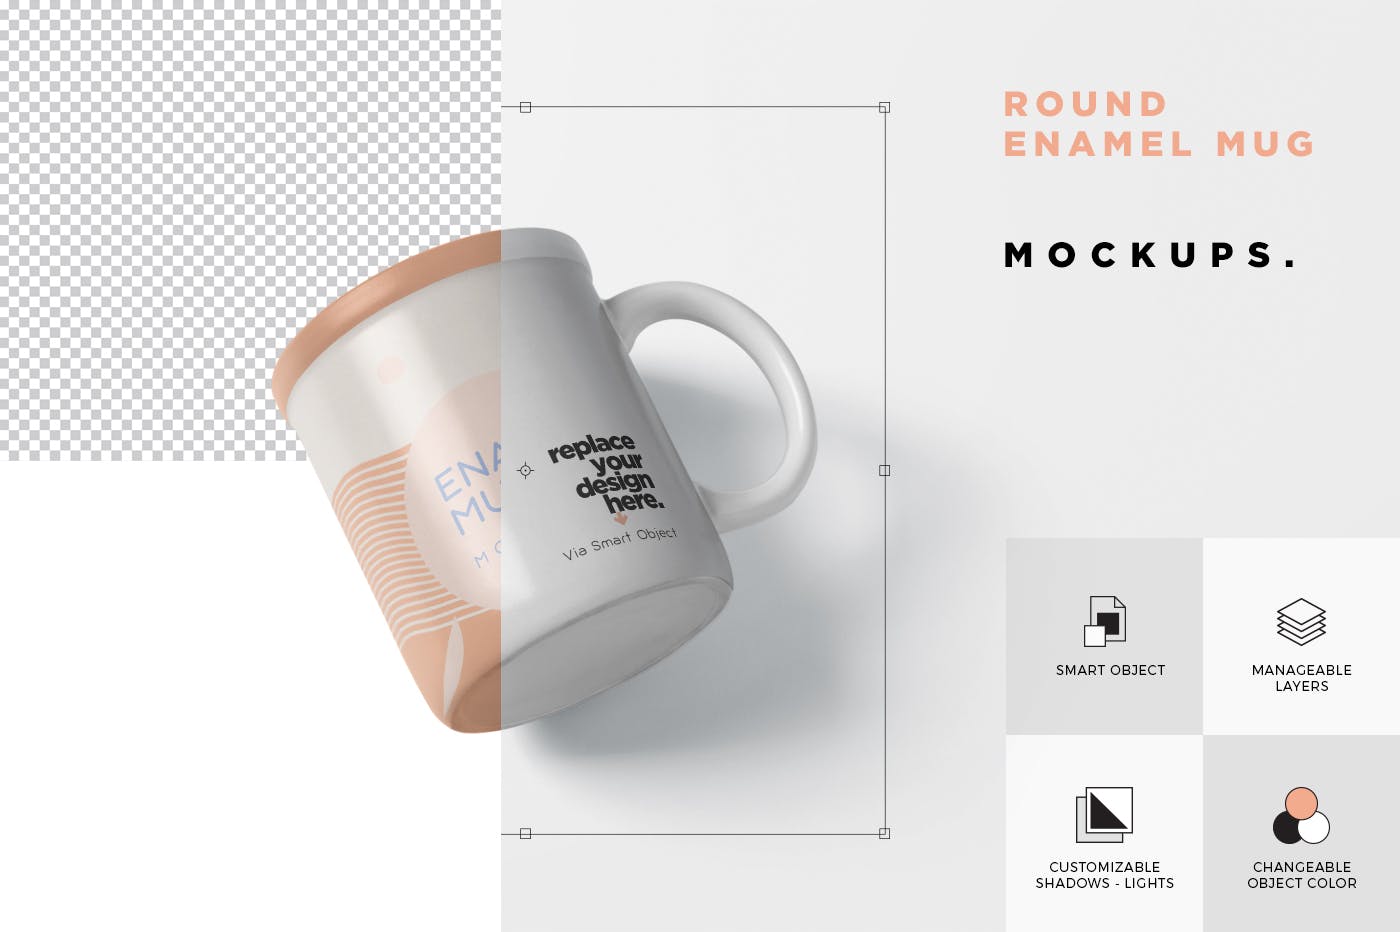 带把手圆形搪瓷杯马克杯图案设计蚂蚁素材精选 Round Enamel Mug Mockup With Handle插图(5)